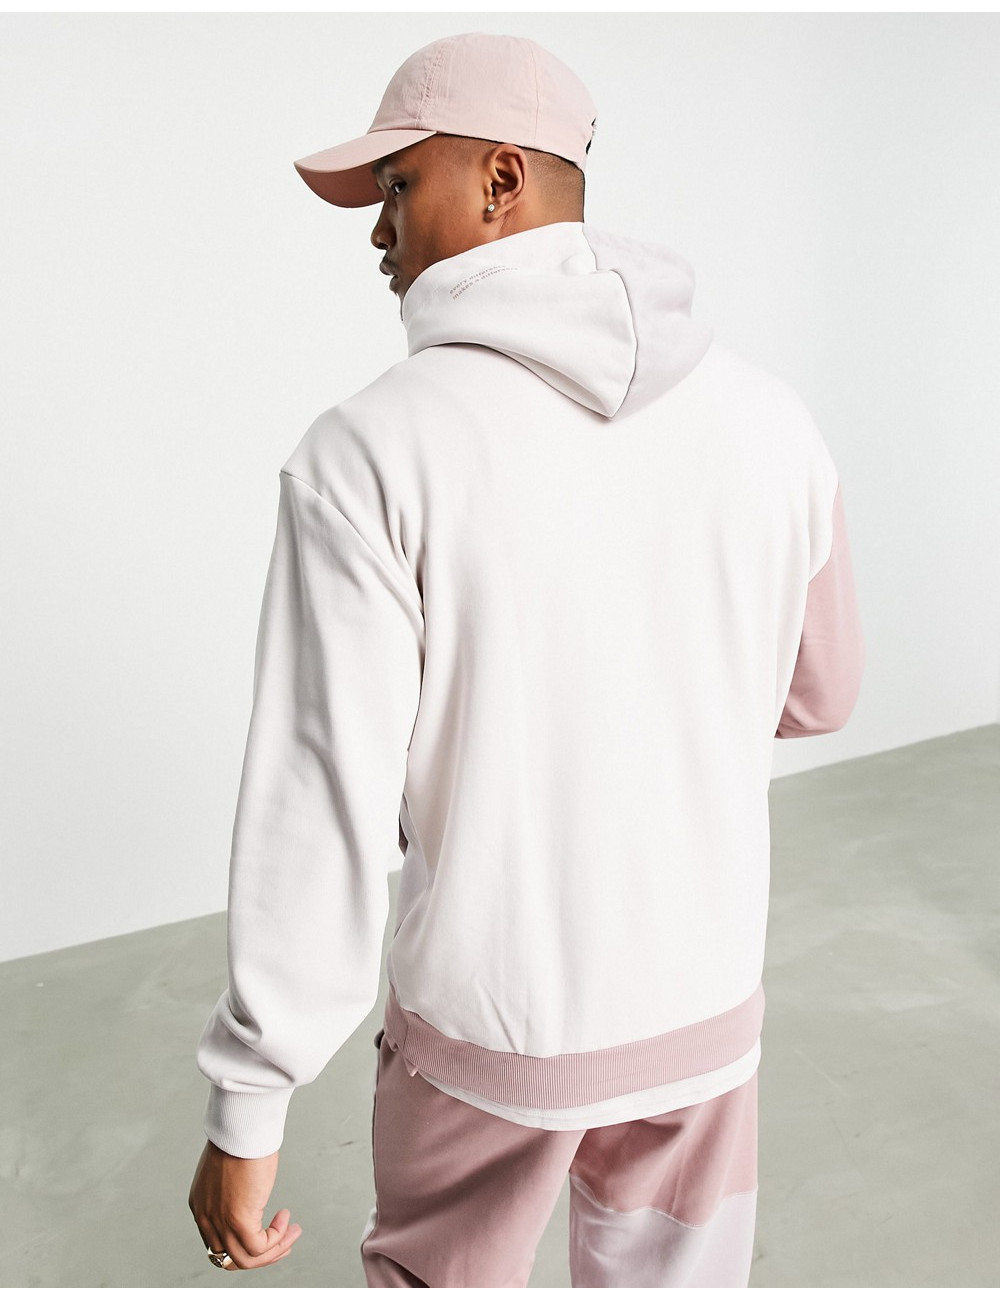 Puma convey hoodie in pink...